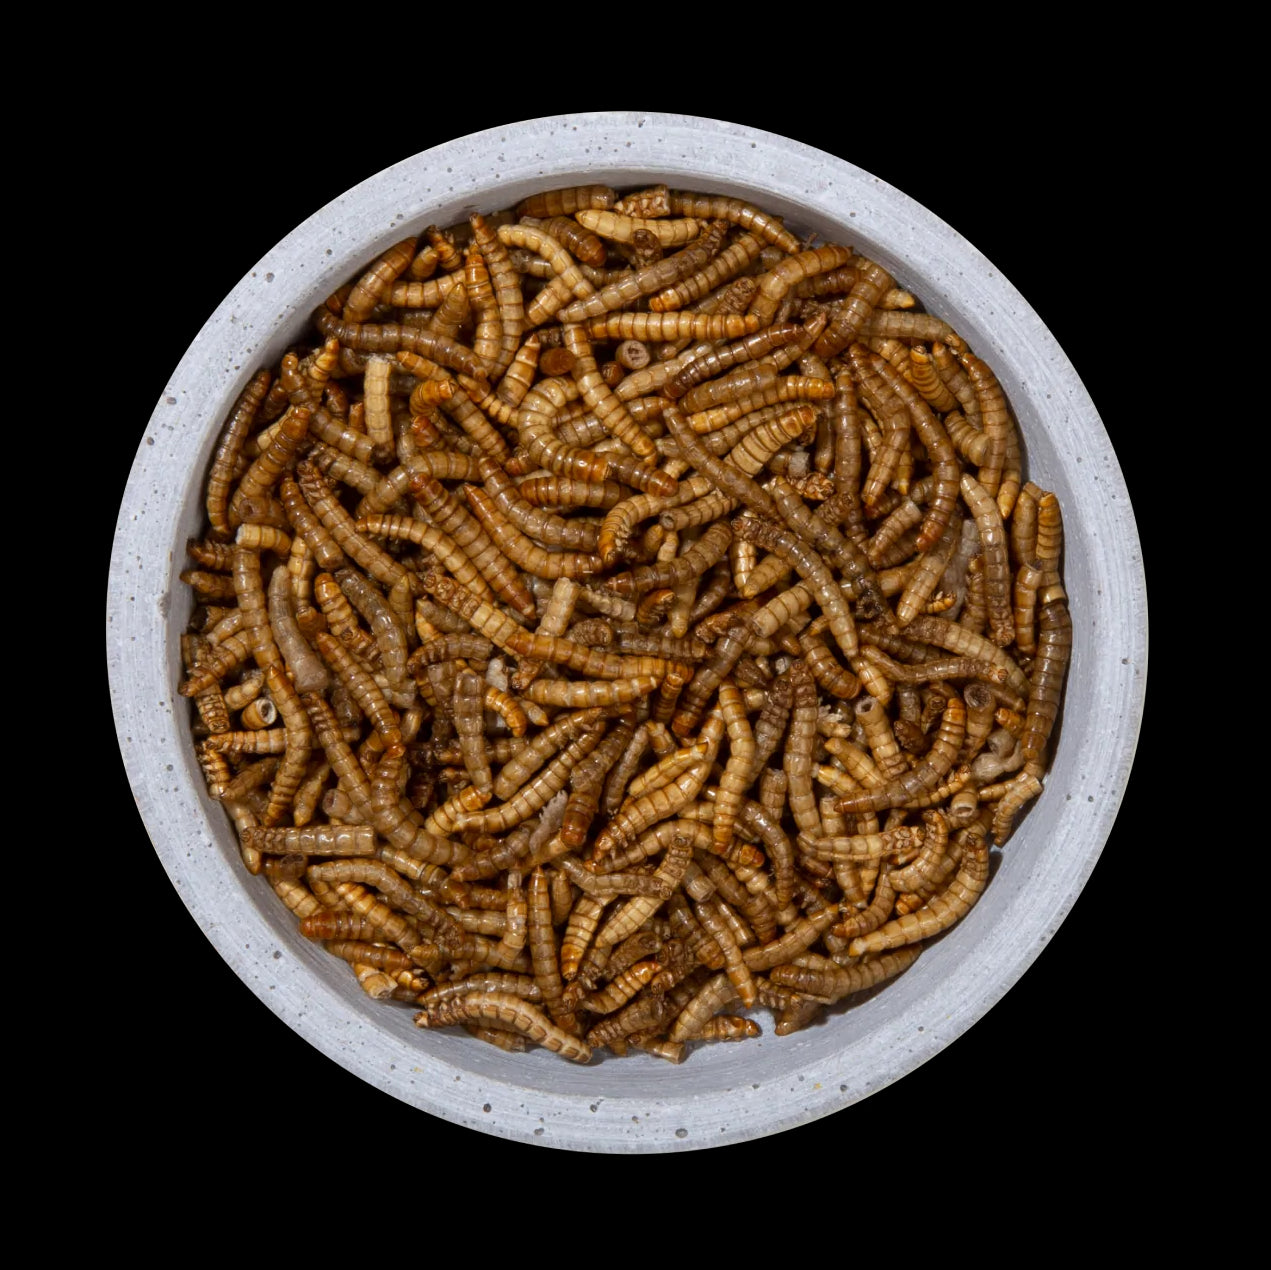 Mehlwürmer Natur